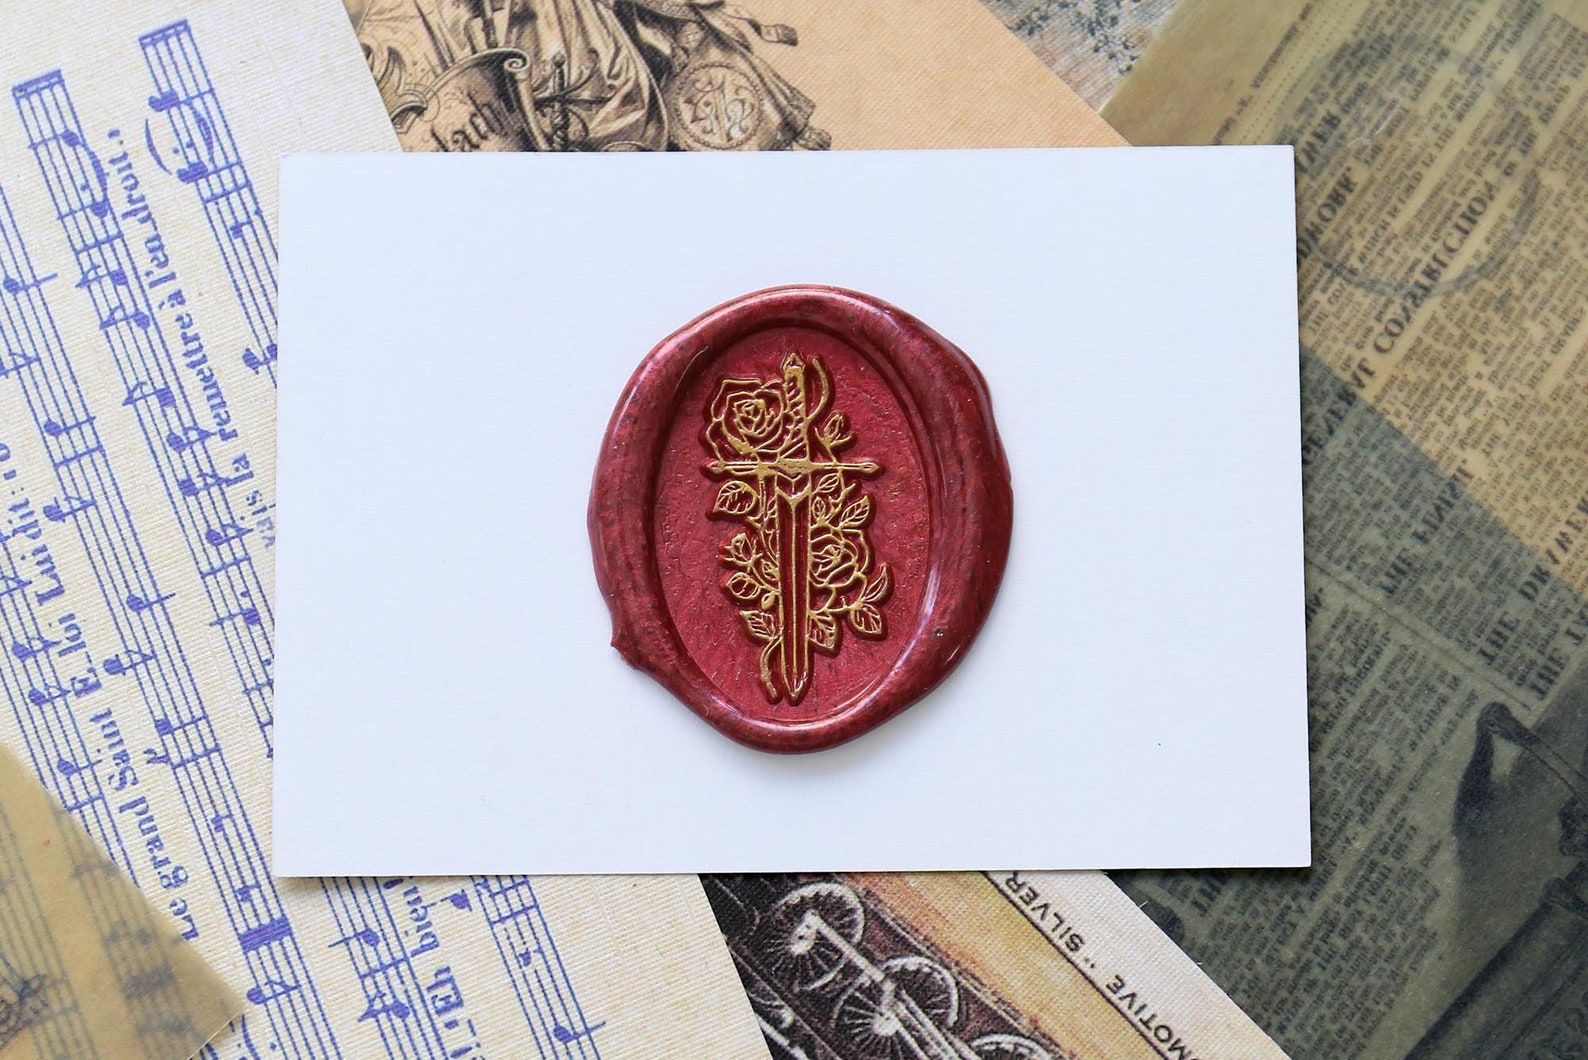 Sceau de cire rouge sur un morceau de papier cartonné blanc.  Le sceau a une épée en or et des roses. 